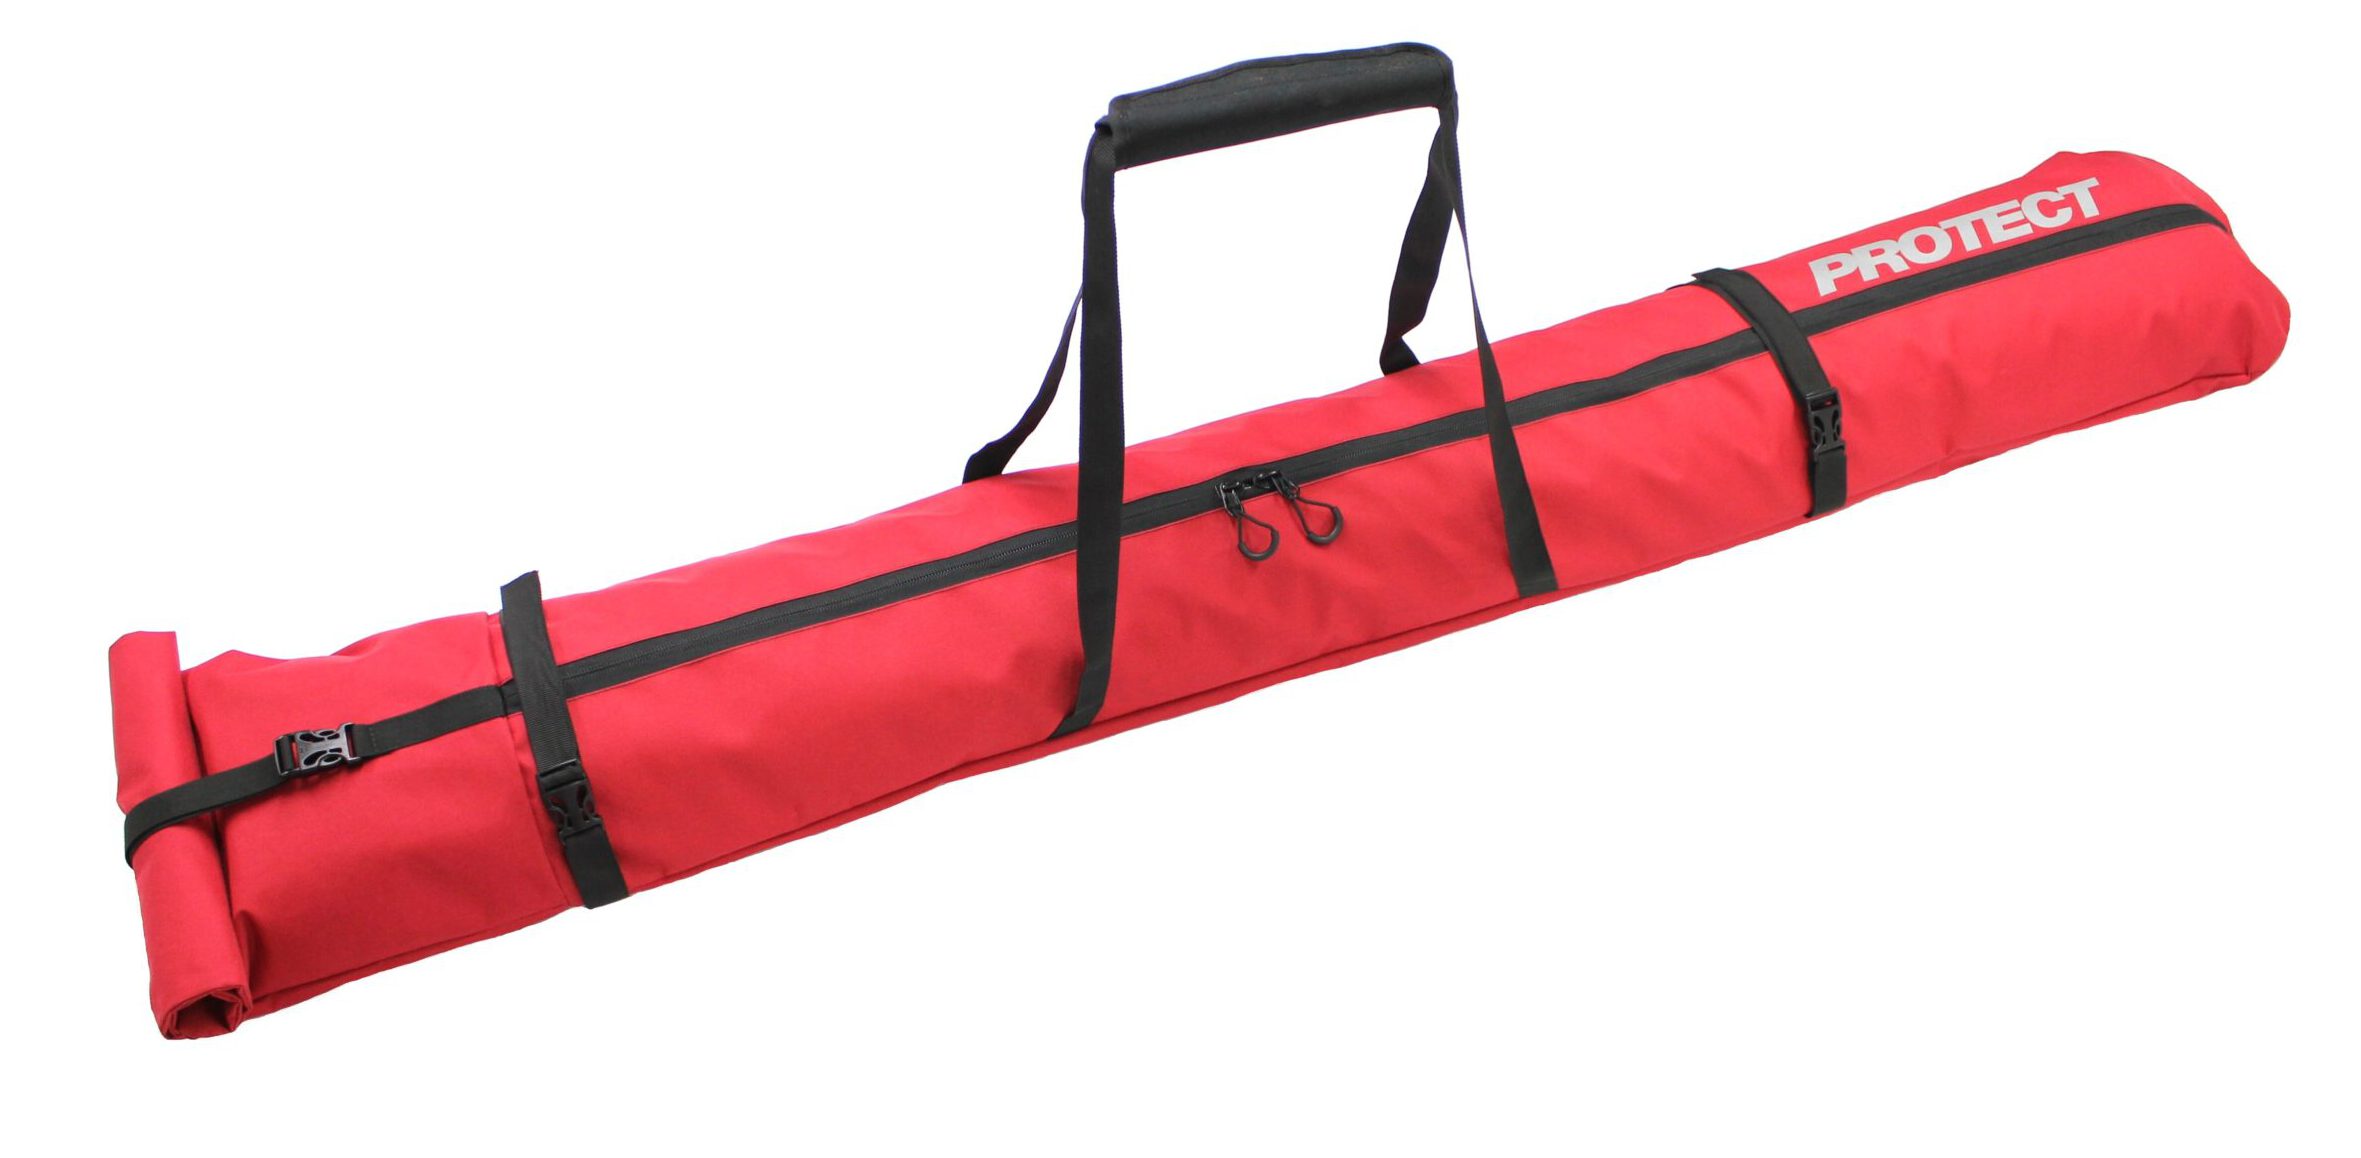 Чехол универсальный для одной пары горных или беговых лыж 160-210 см, PROTECT цвет красный.